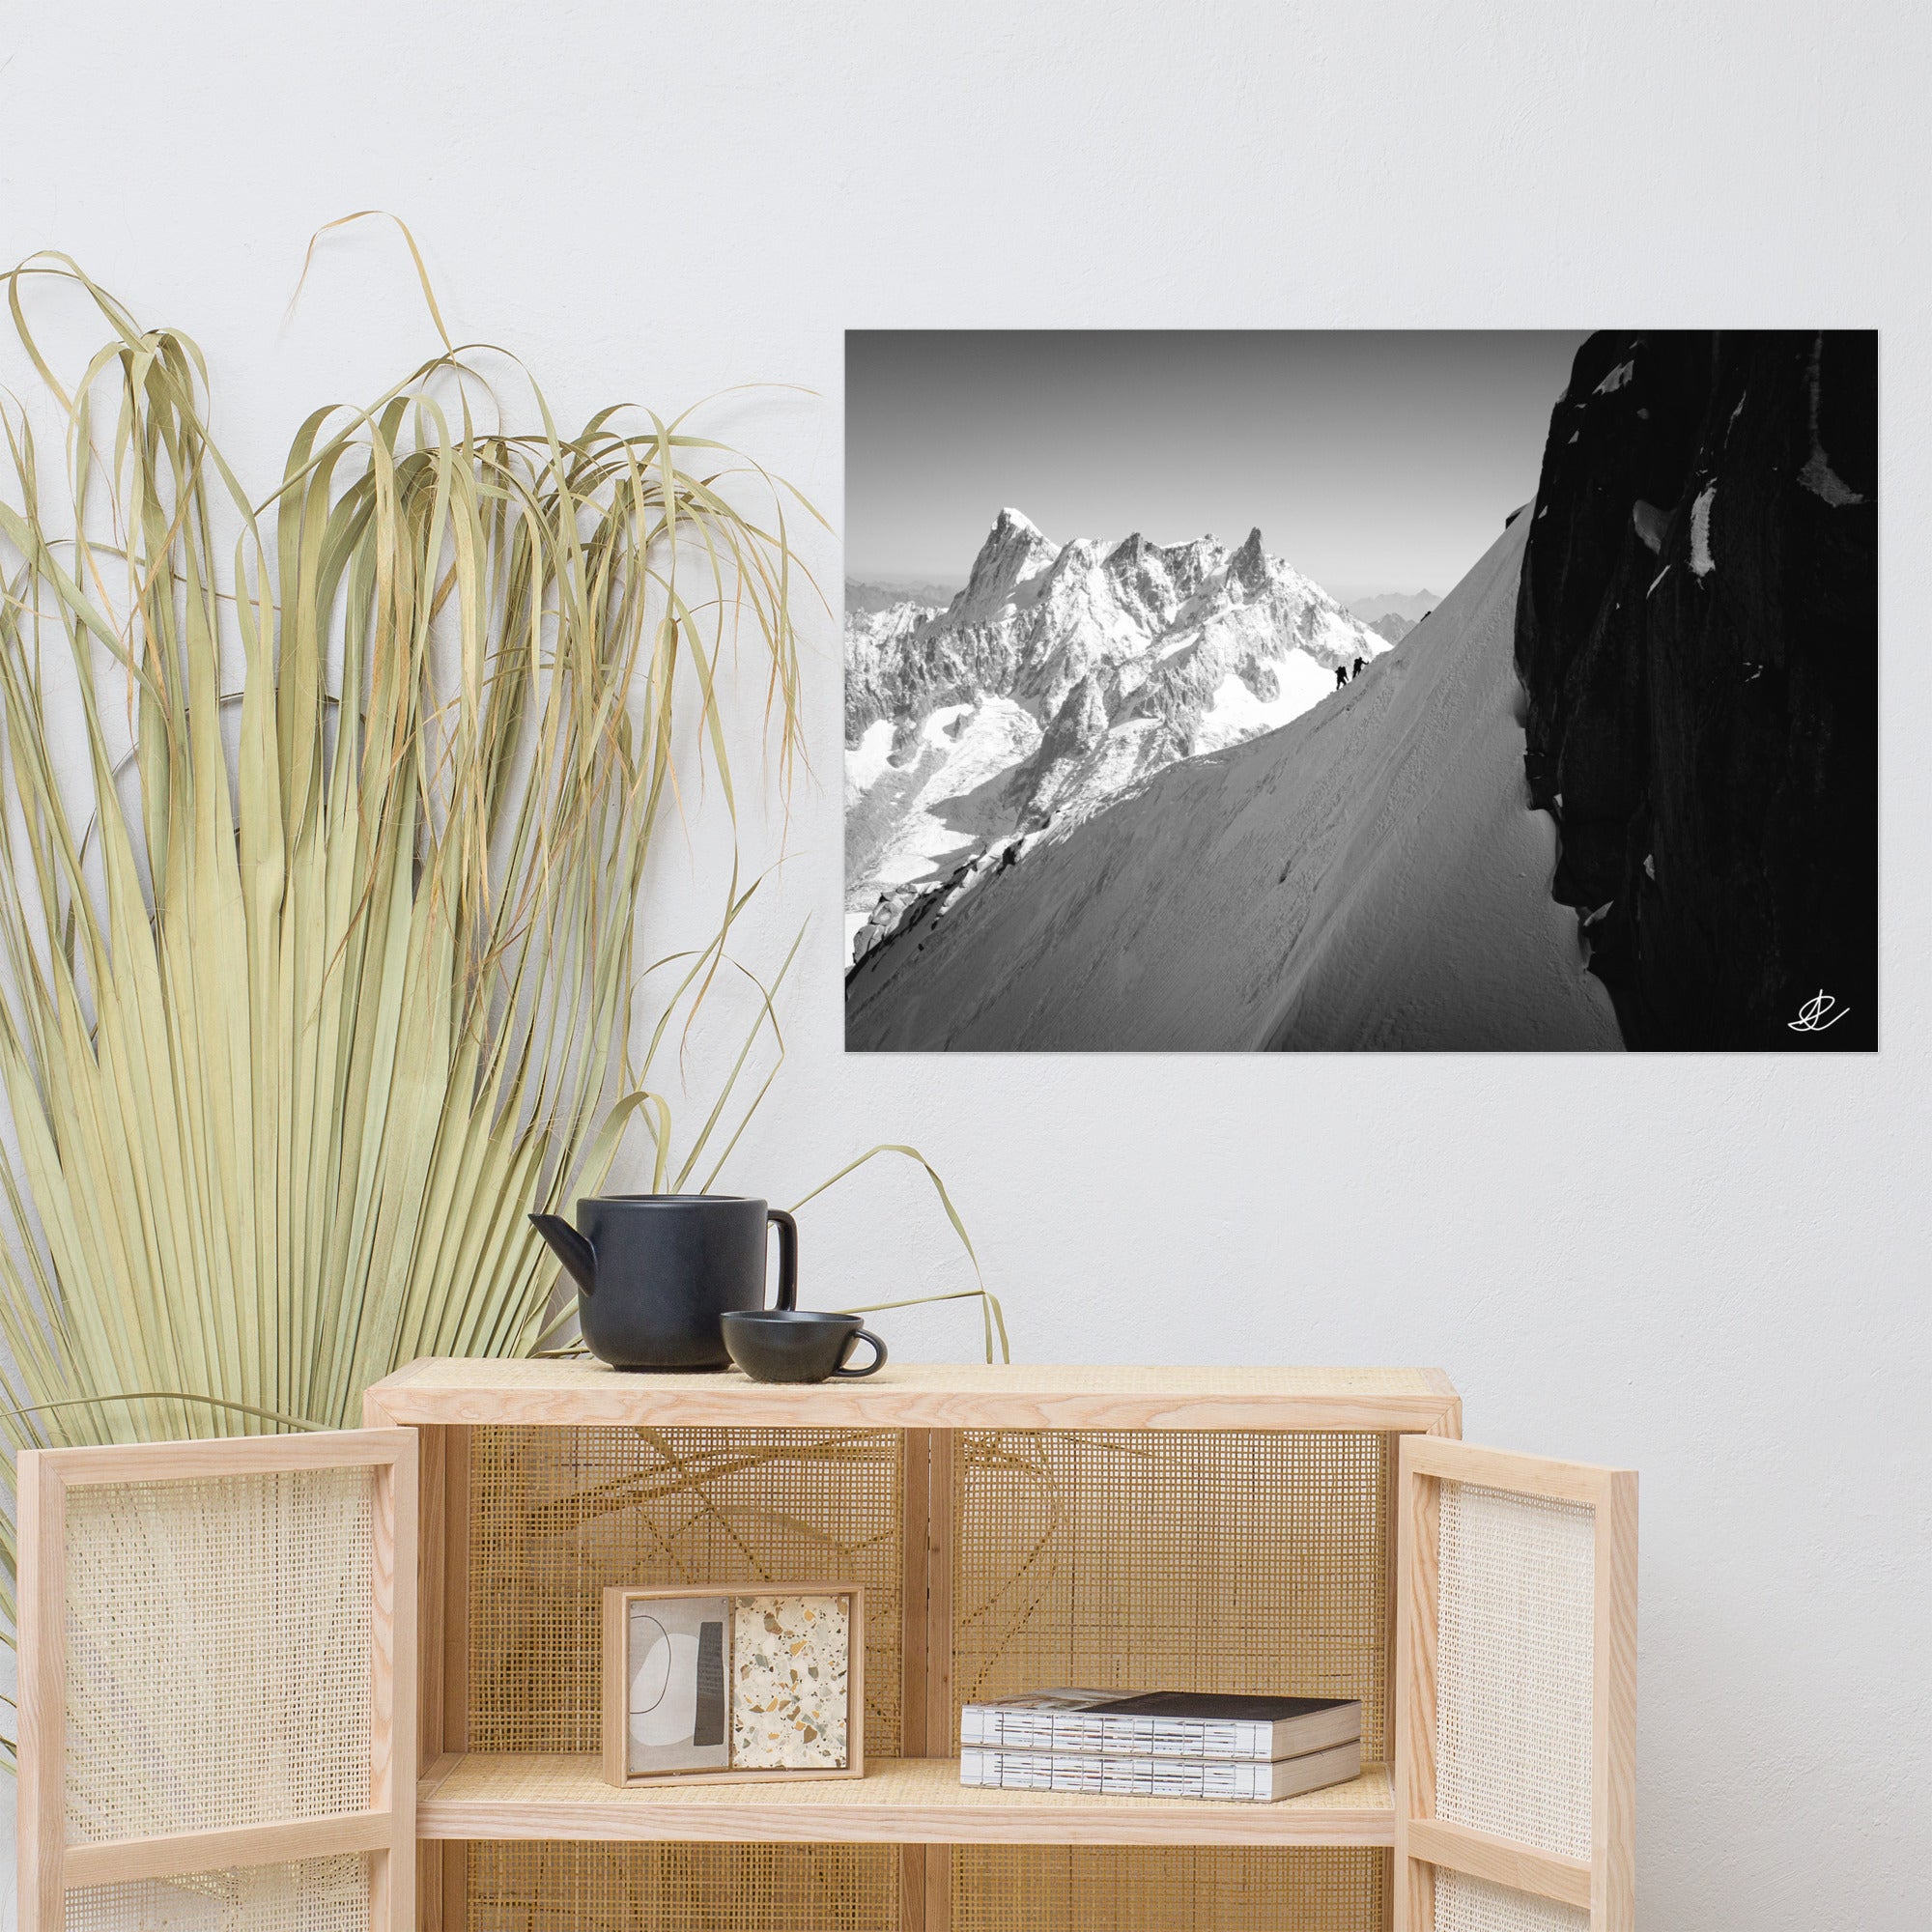 Image du poster "Le Chemin des Cimes" de Ilan Shoham, illustrant le défi et la beauté de l'alpinisme dans les Alpes.